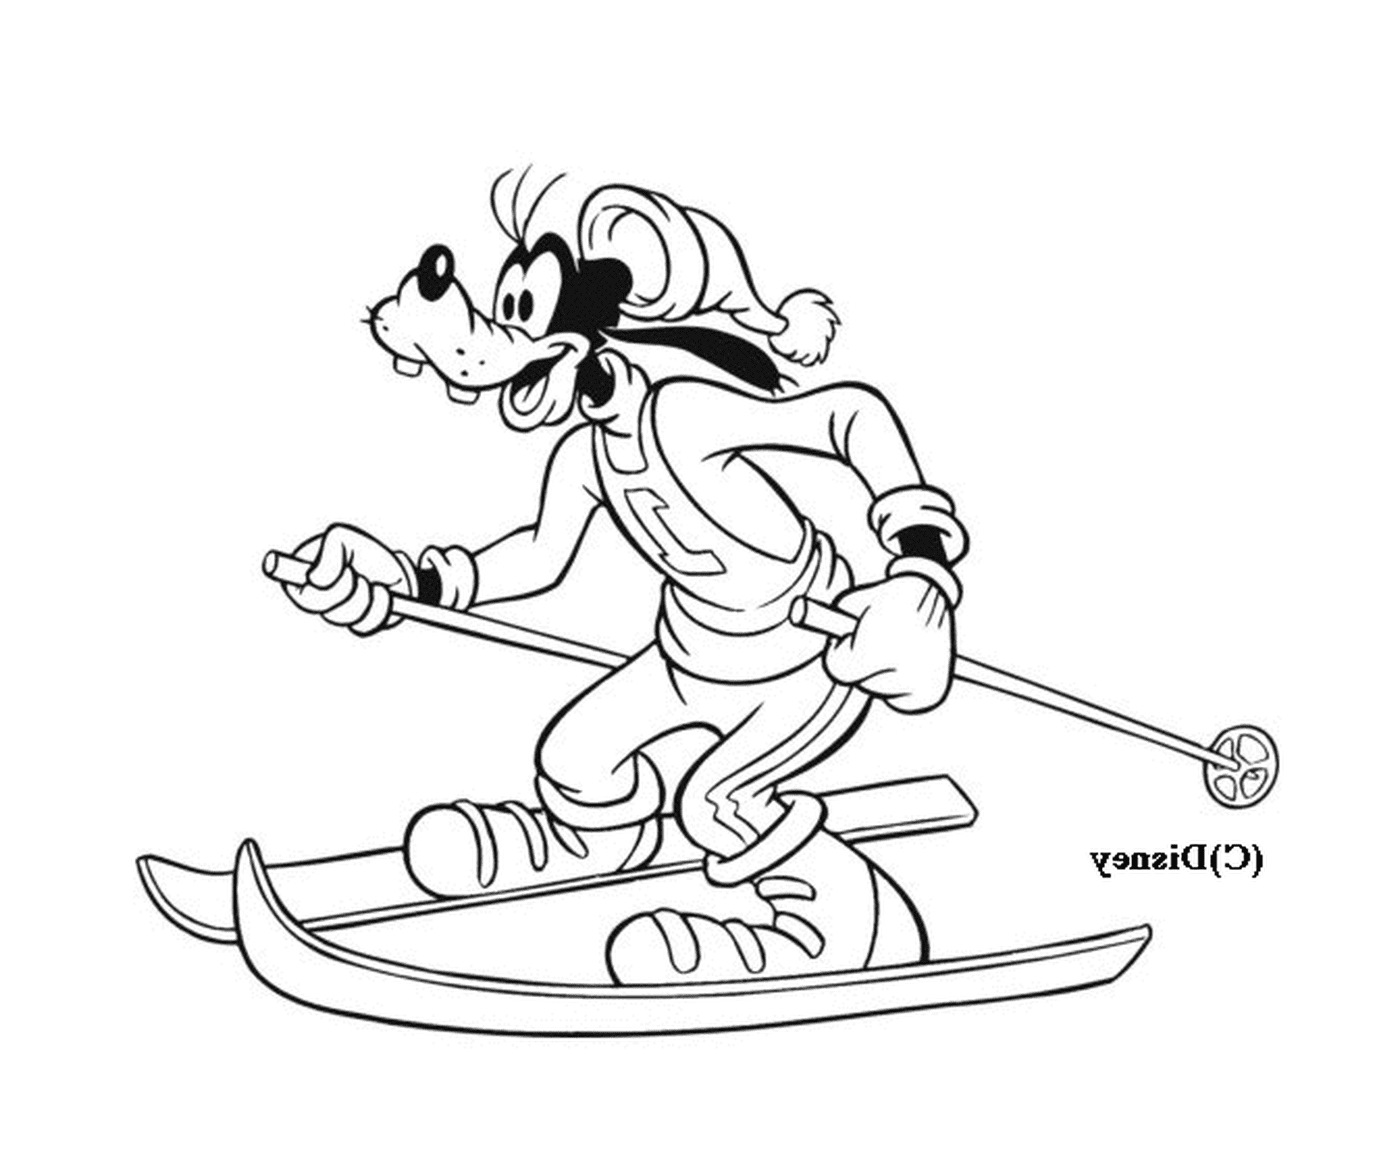   Dingo fait du ski sur une pente enneigée 